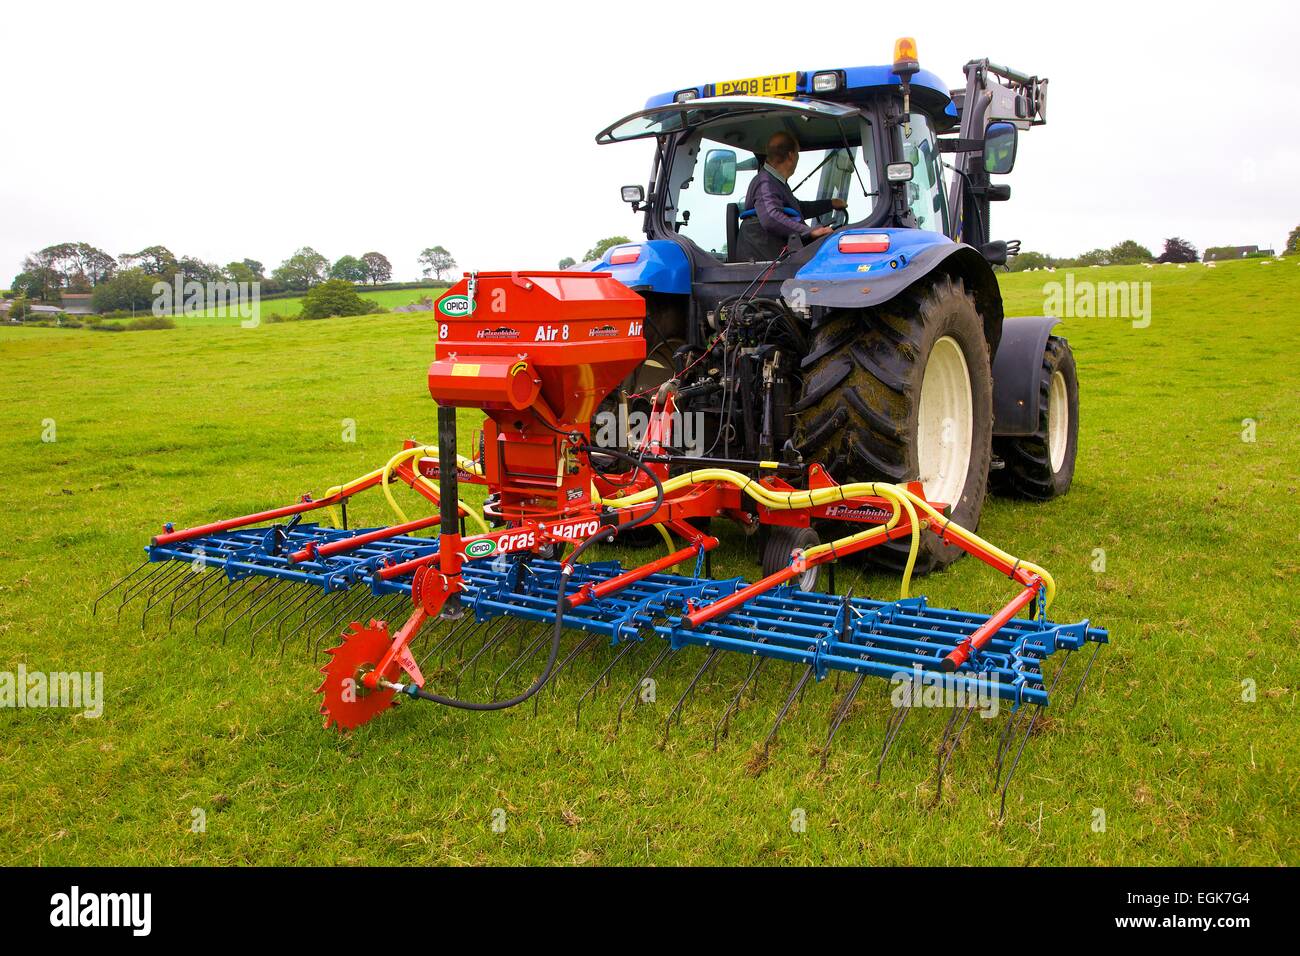 Hatzenbichler Air 8 Pneumatic Seeder & Tractor in field. Stock Photo